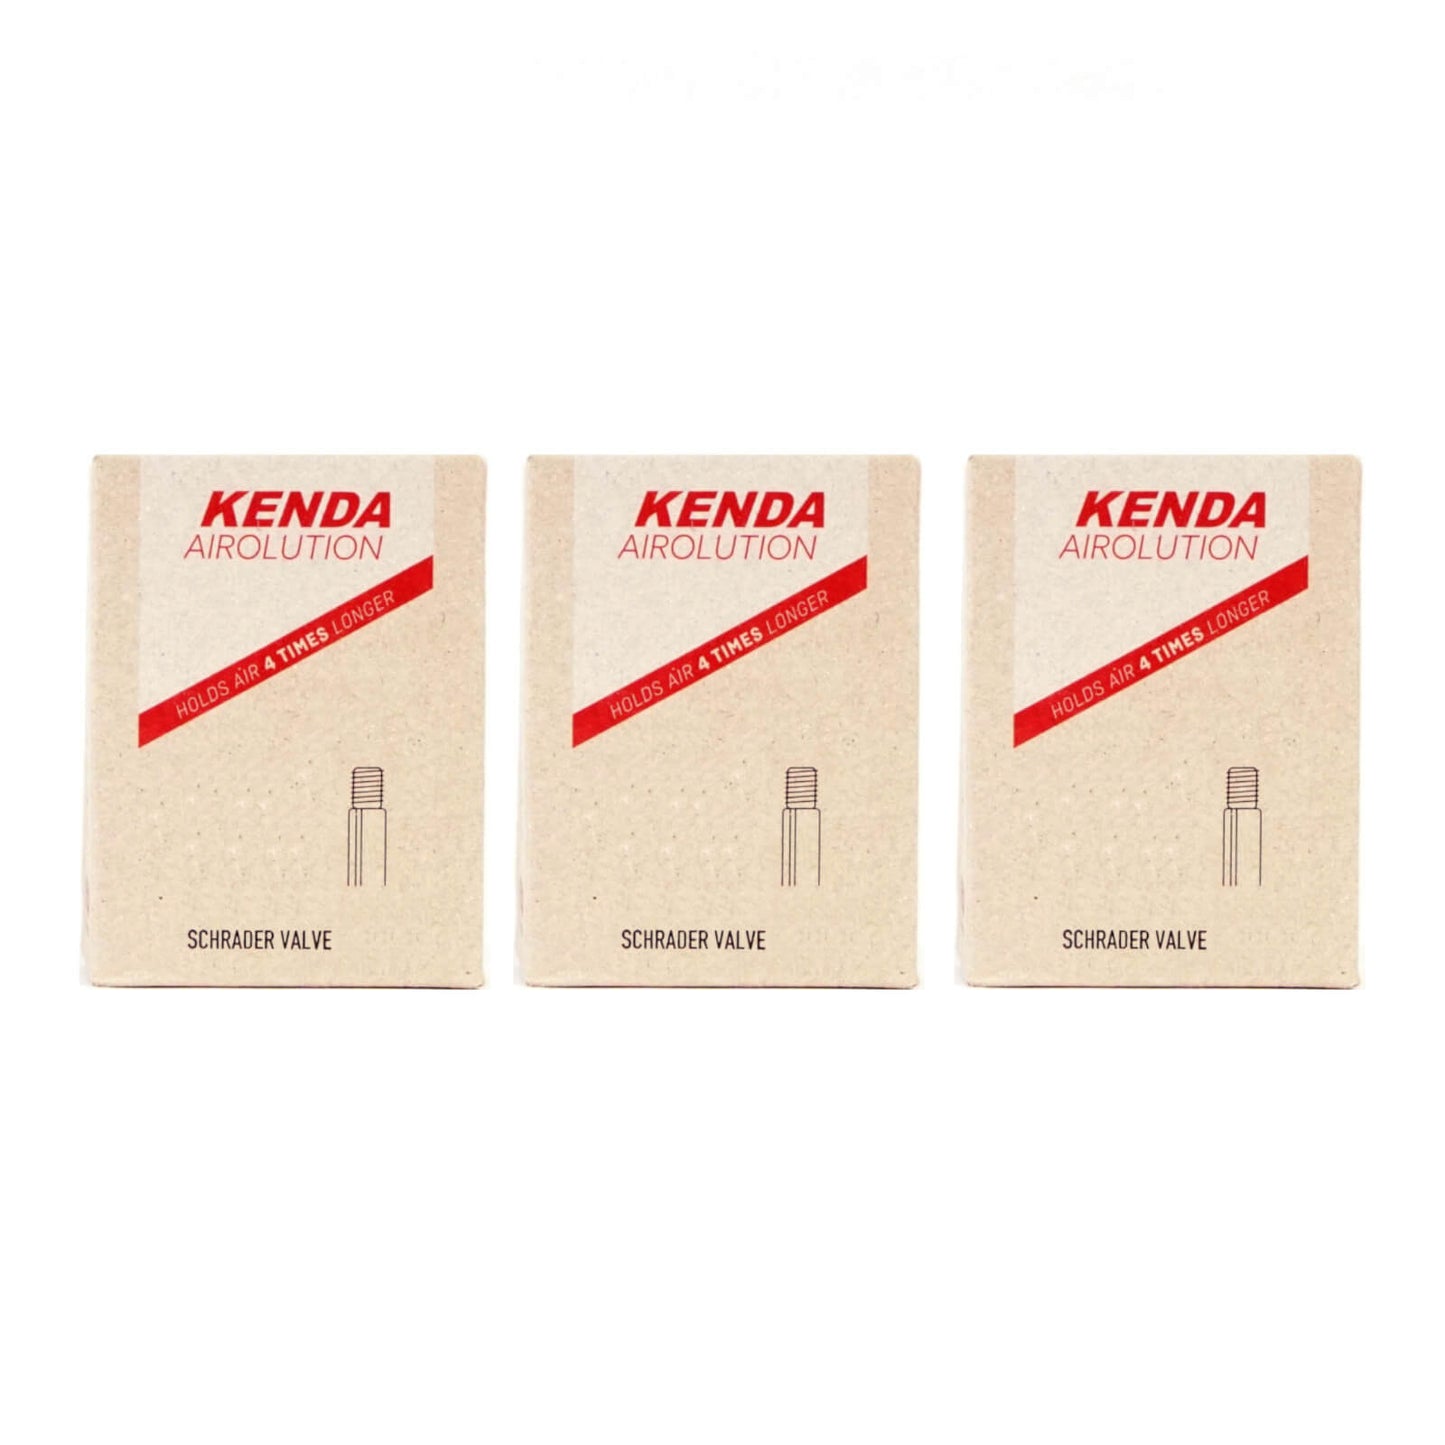 Kenda Airolution 16x1.5-2.25" 16 Inch Schrader Valve Bike Inner Tube Pack of 3